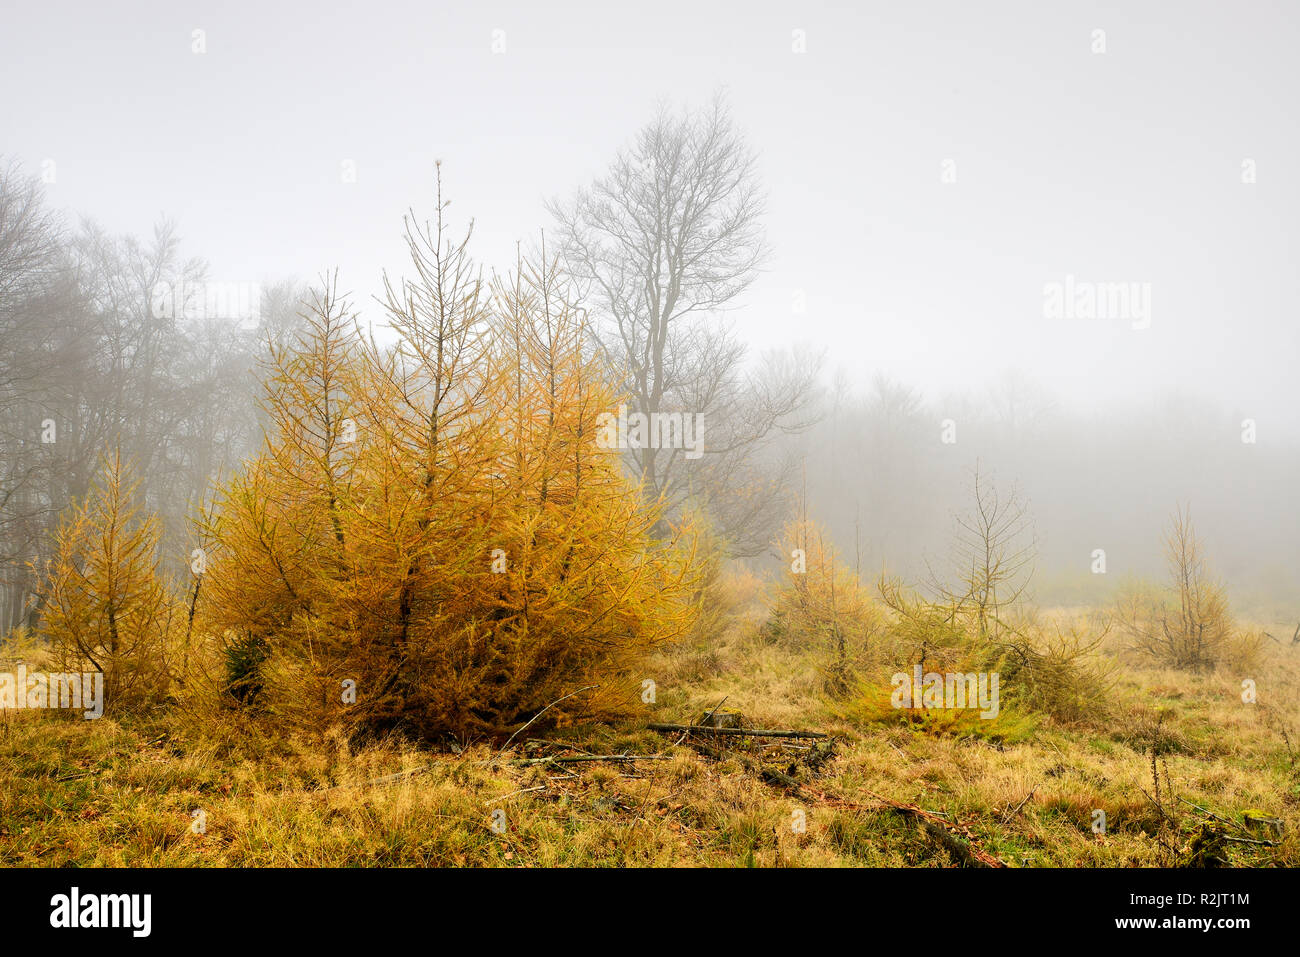 Deutschland, Hessen, Nationalpark Kellerwald-Edersee, Lichtung, so genannte Triesch, mit jungen Lärchen im späten Herbst, Nebel, Stockfoto